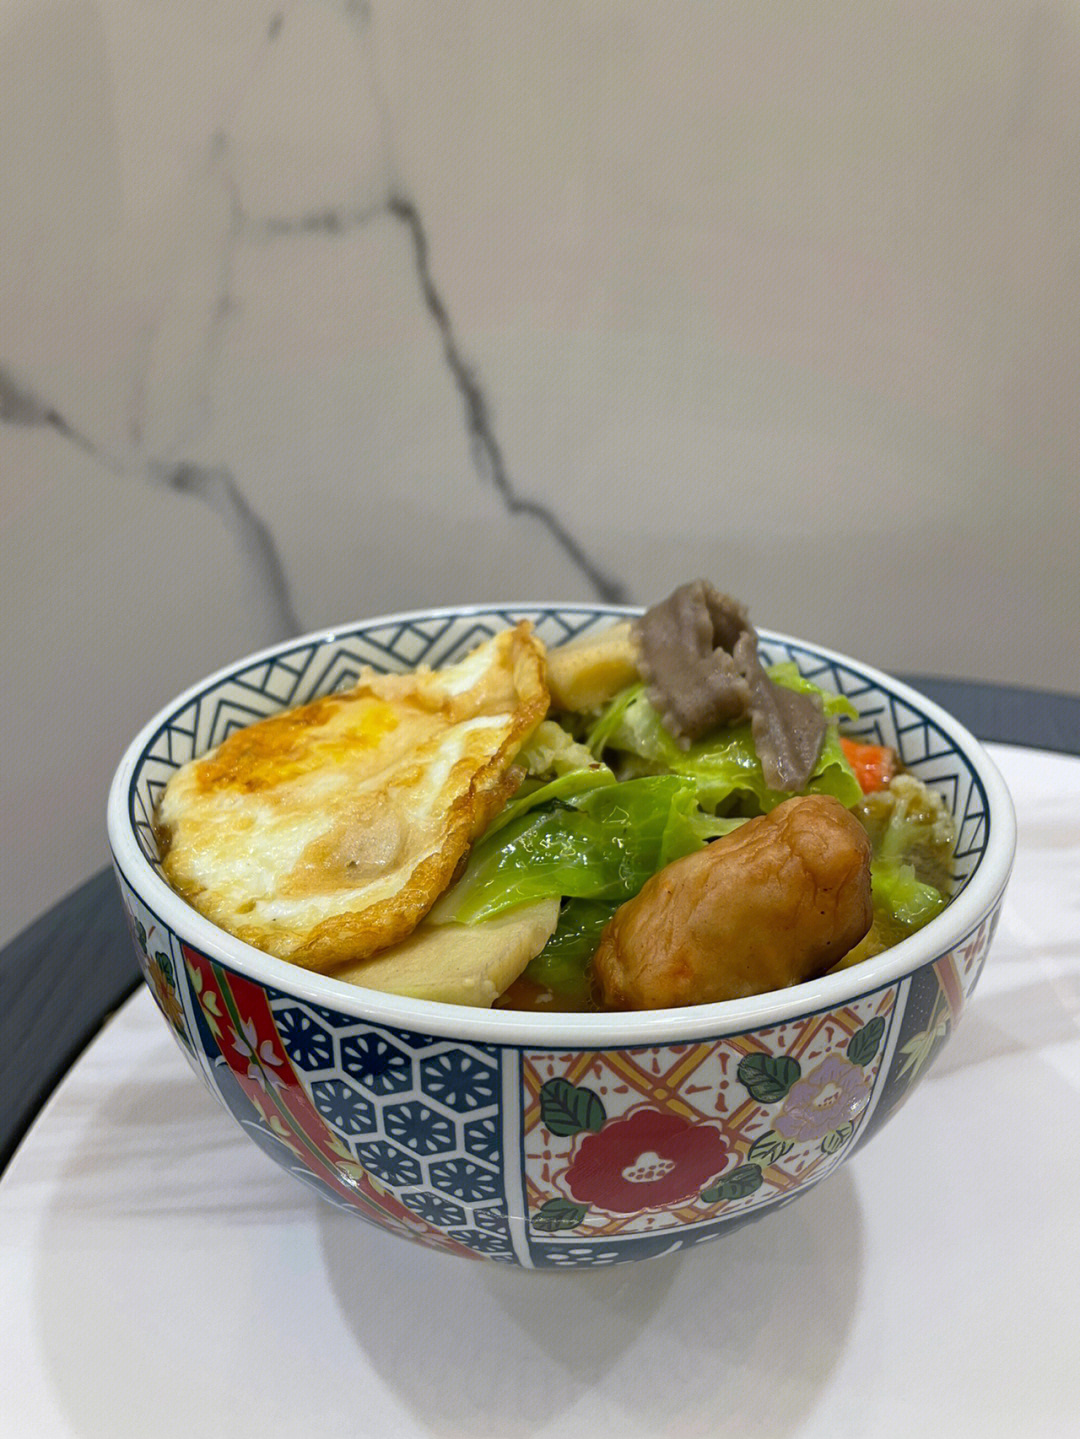 8早餐:碱水面包午餐:米饭 炒鸡蛋 青菜 梅干菜笋炒肉(巨好吃)晚餐